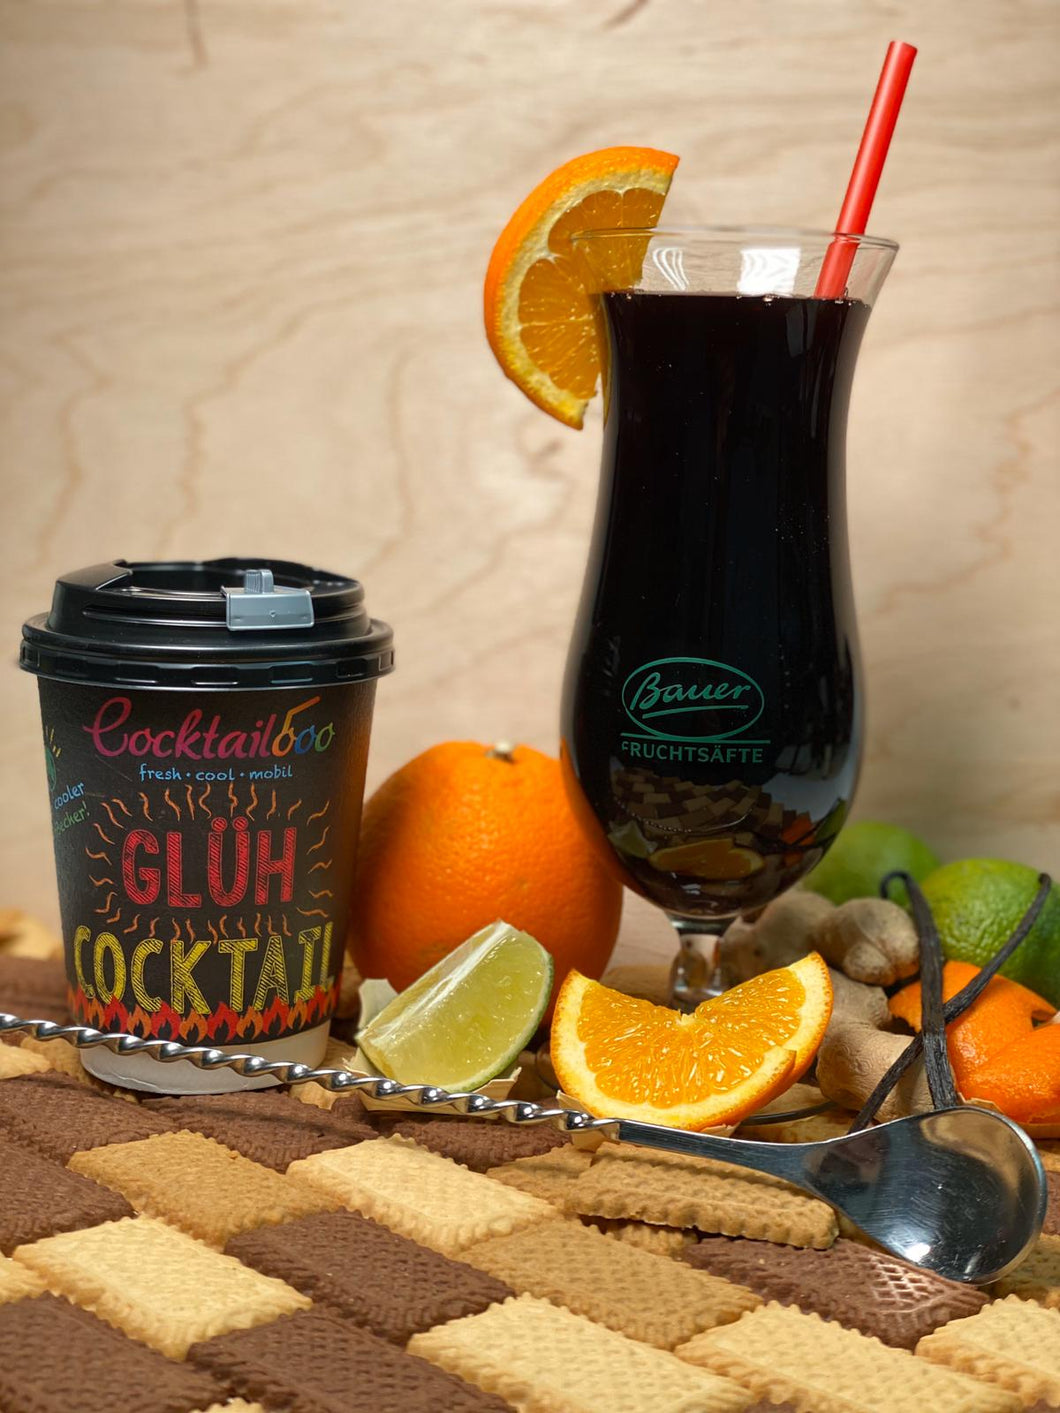 Abbildung des Glüh-Cocktails: Cocktailglas mit dunkelroter Flüssigkeit. Daneben ein To-Go Becher mit dem Cocktailooo Logo und der Aufschrift 